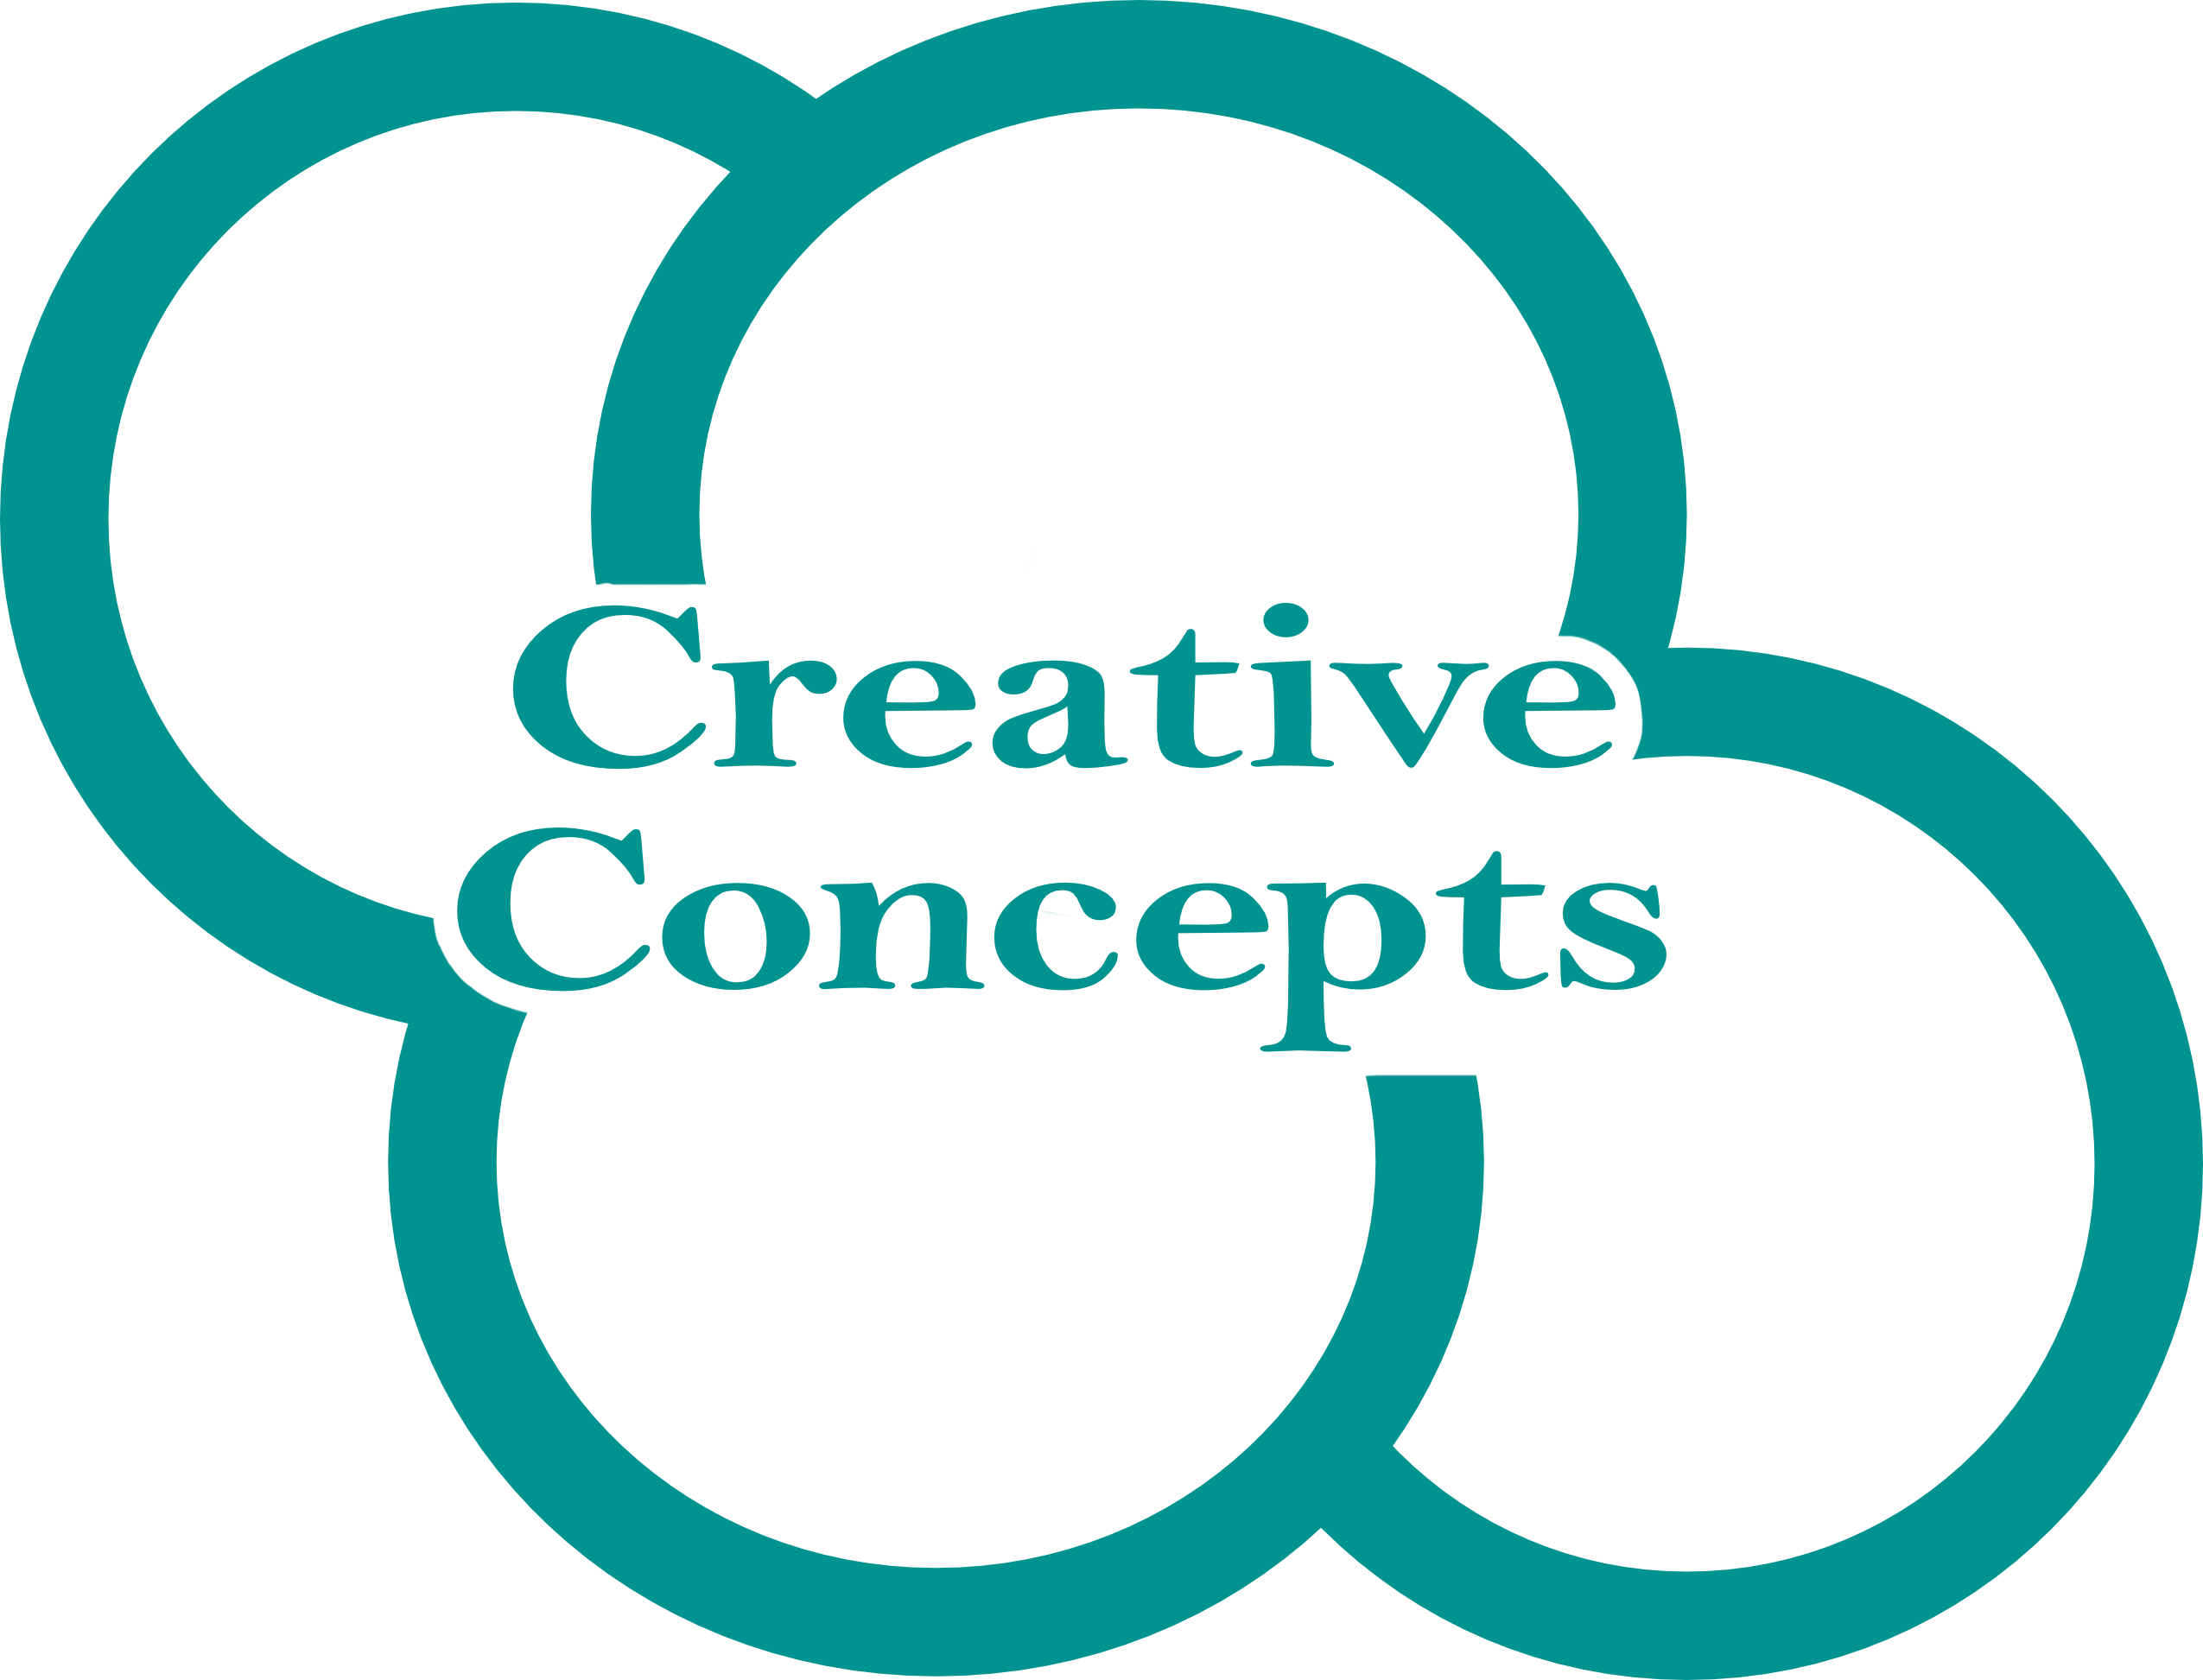 the creative logo for creative concepts